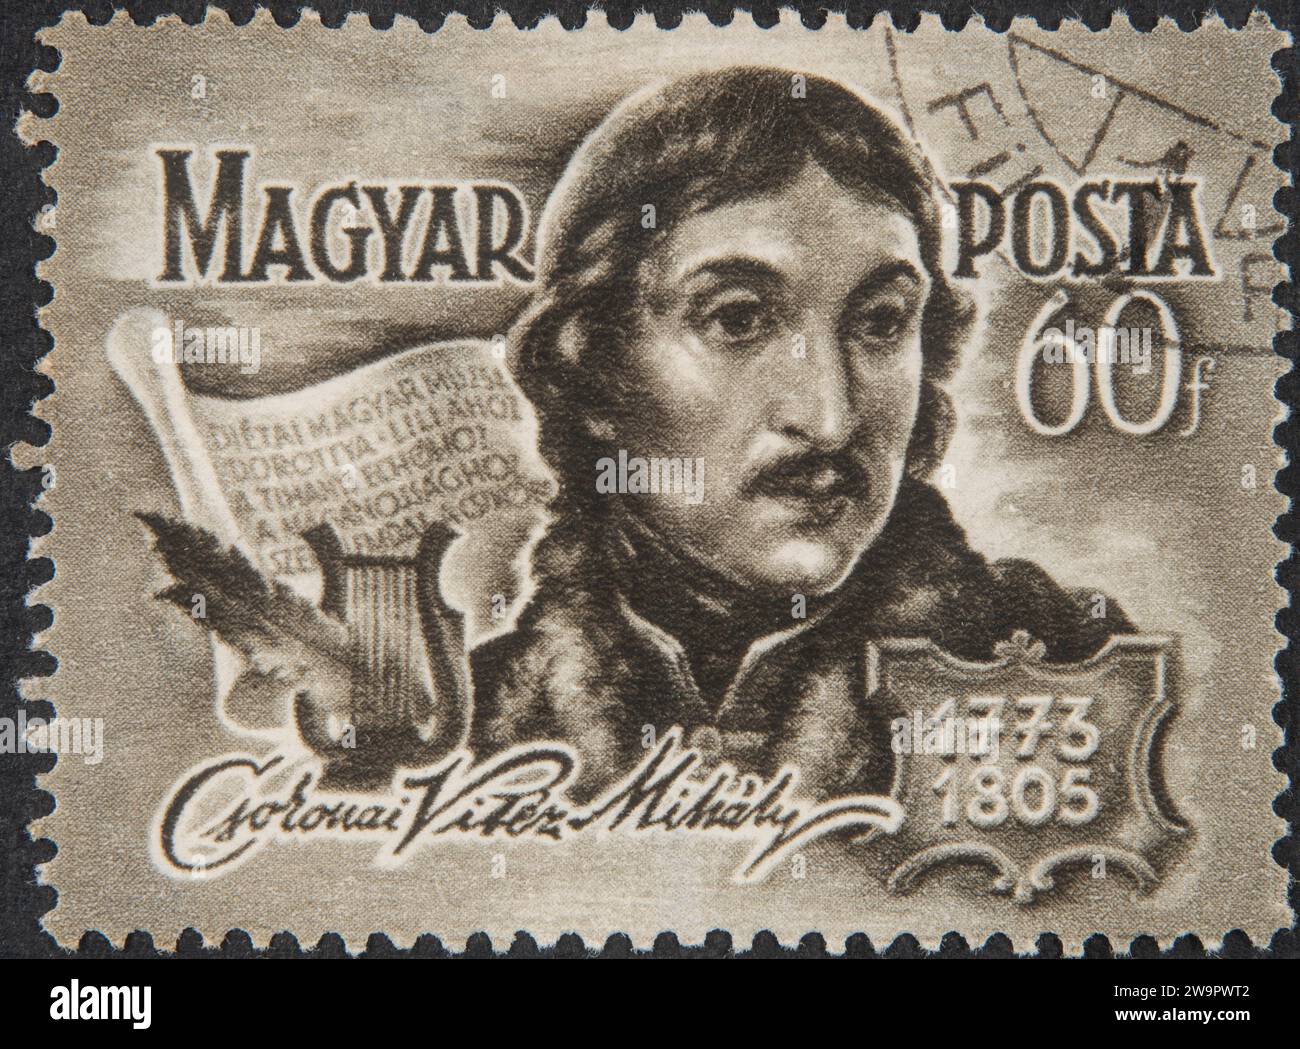 Mihaly Csokonai Vitez, 1773 -1805, poète hongrois. Portrait sur un timbre postal hongrois Banque D'Images